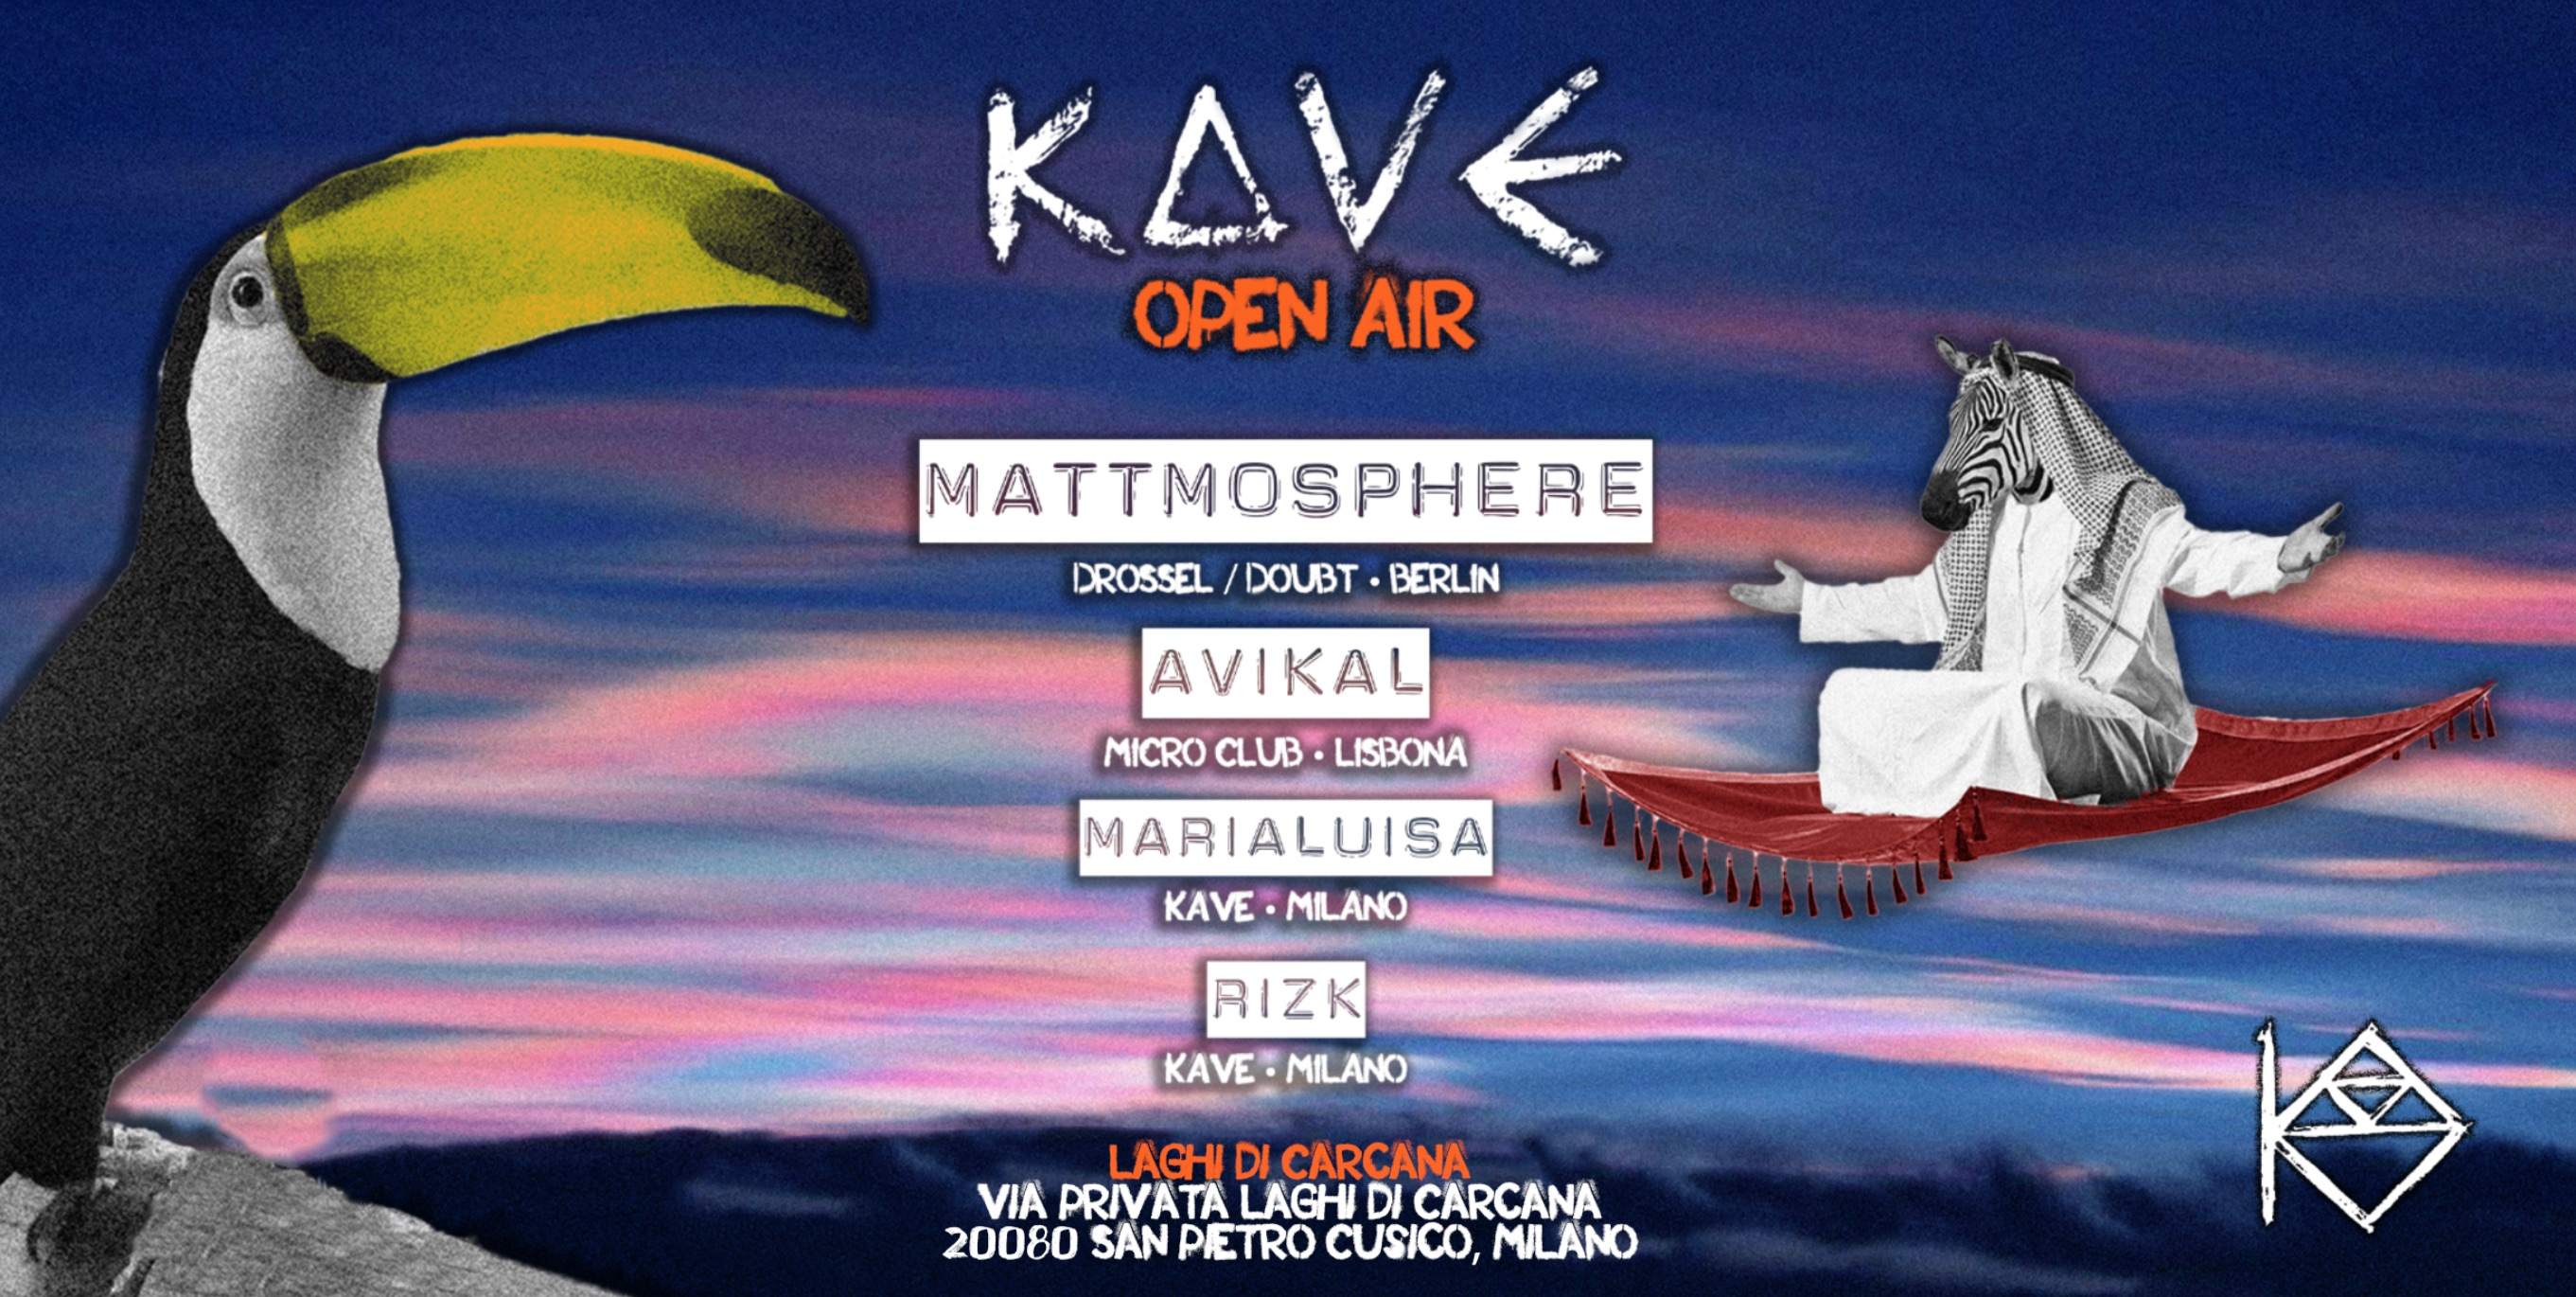 KAVE open air // mattmosphere & Avikal - フライヤー表